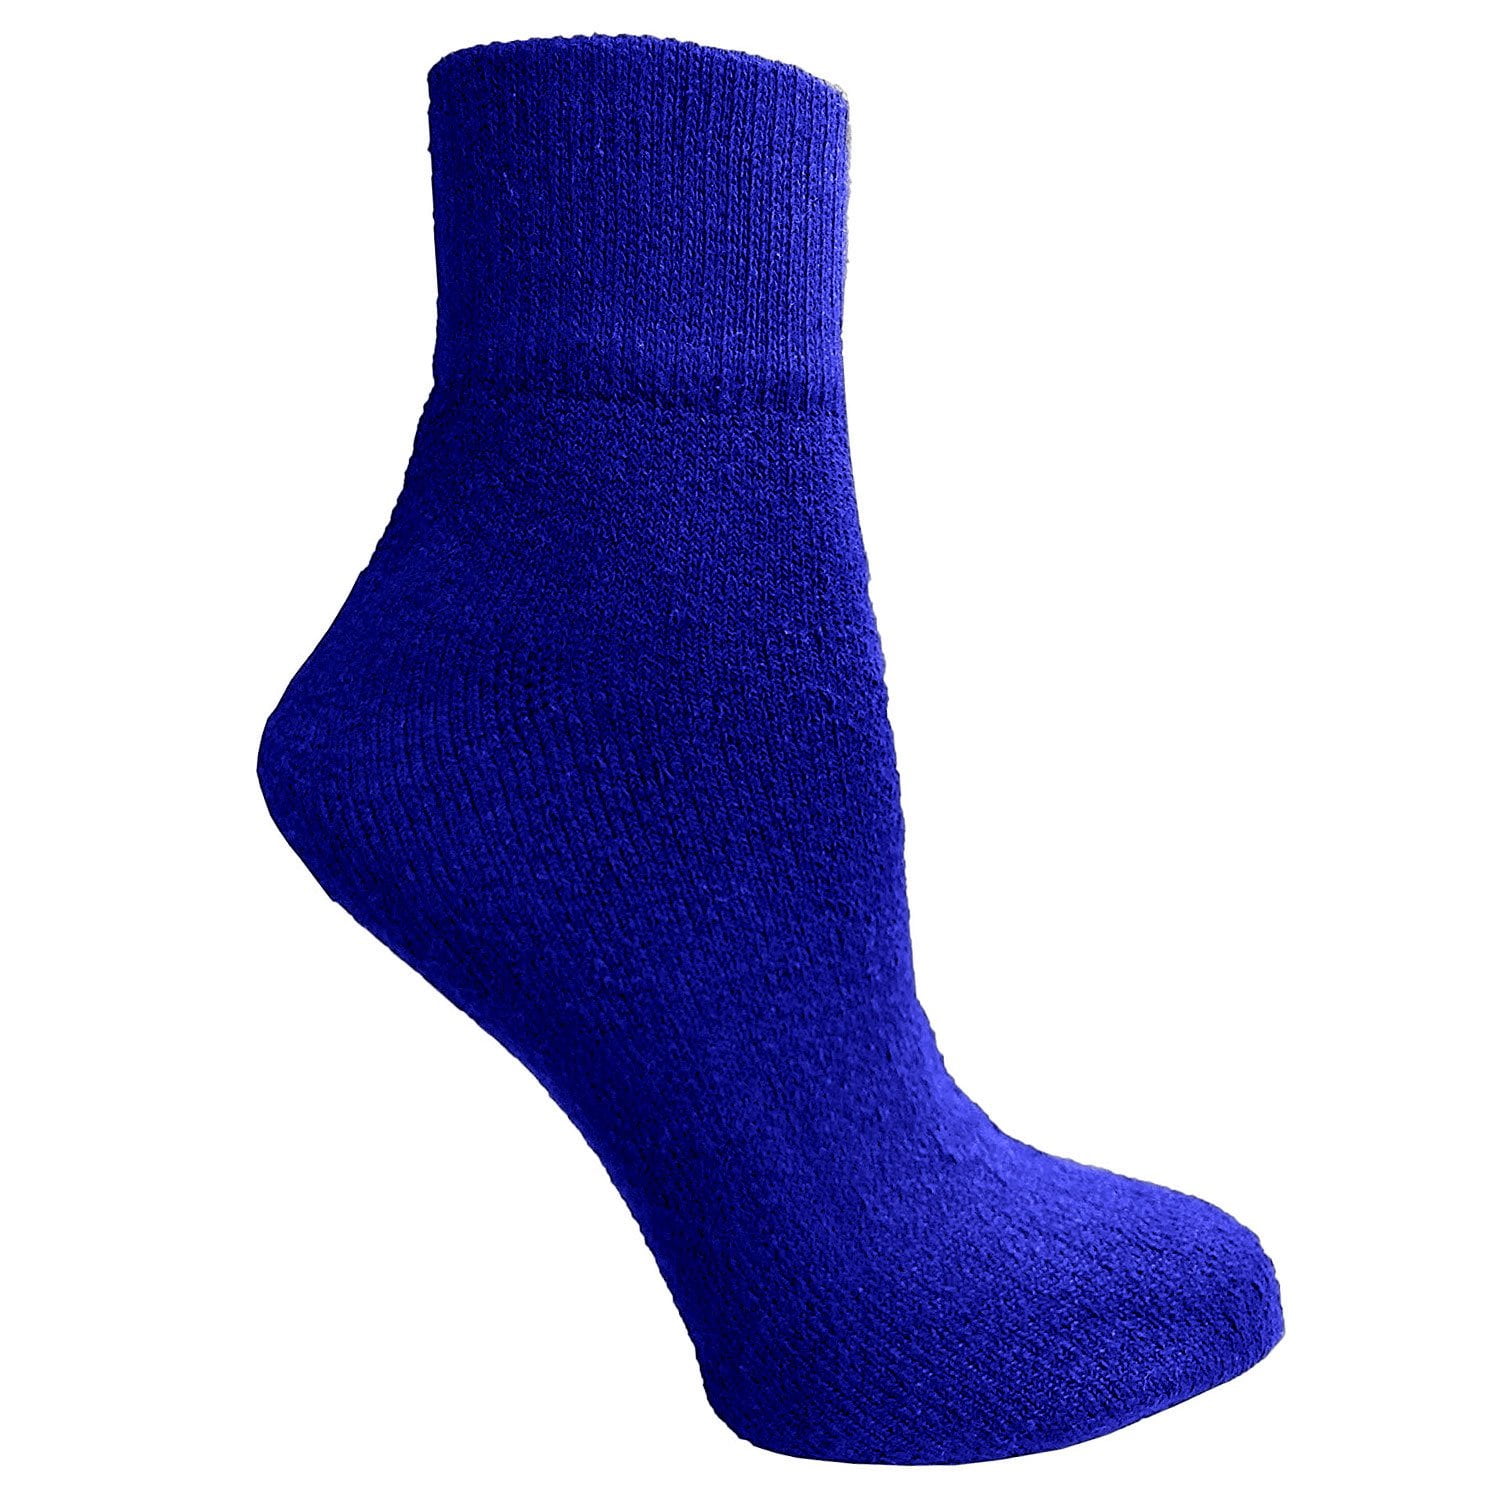 Wholesale Lot Men's Adi Ankle Quarter Cotton Low Sport Socks Size 9-11 10-13 